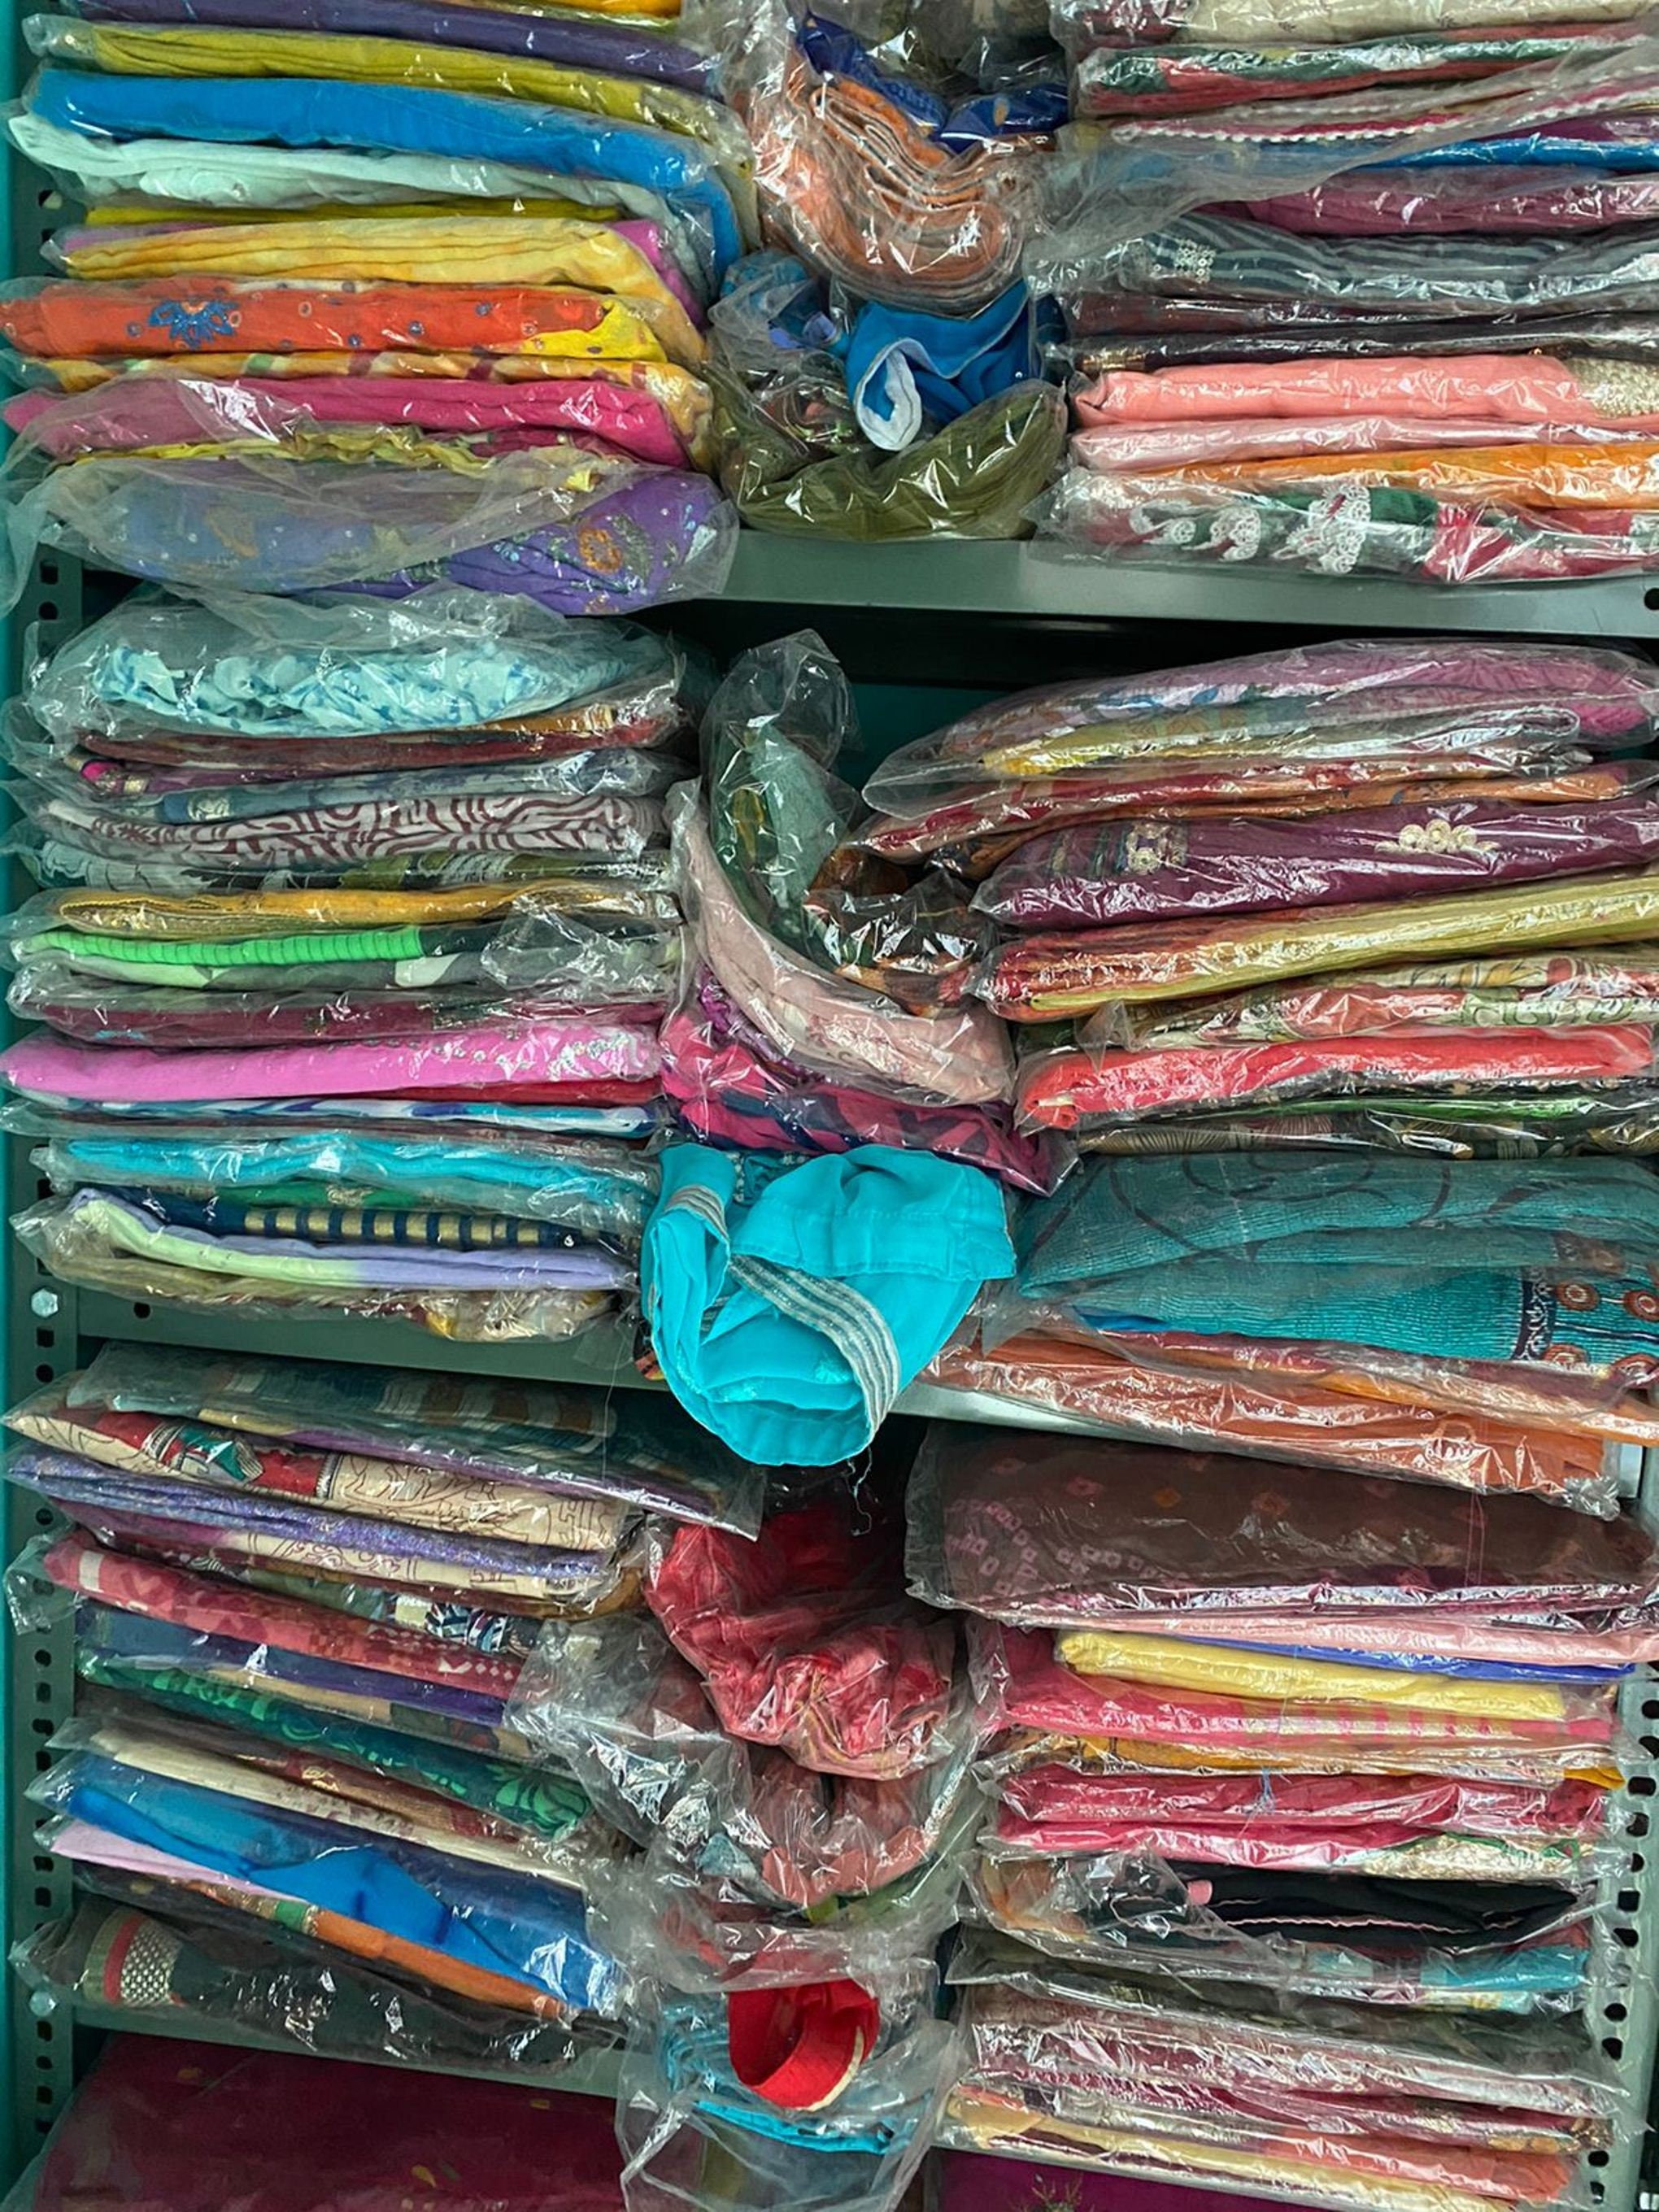 Meet Mini, our vintage sari supplier